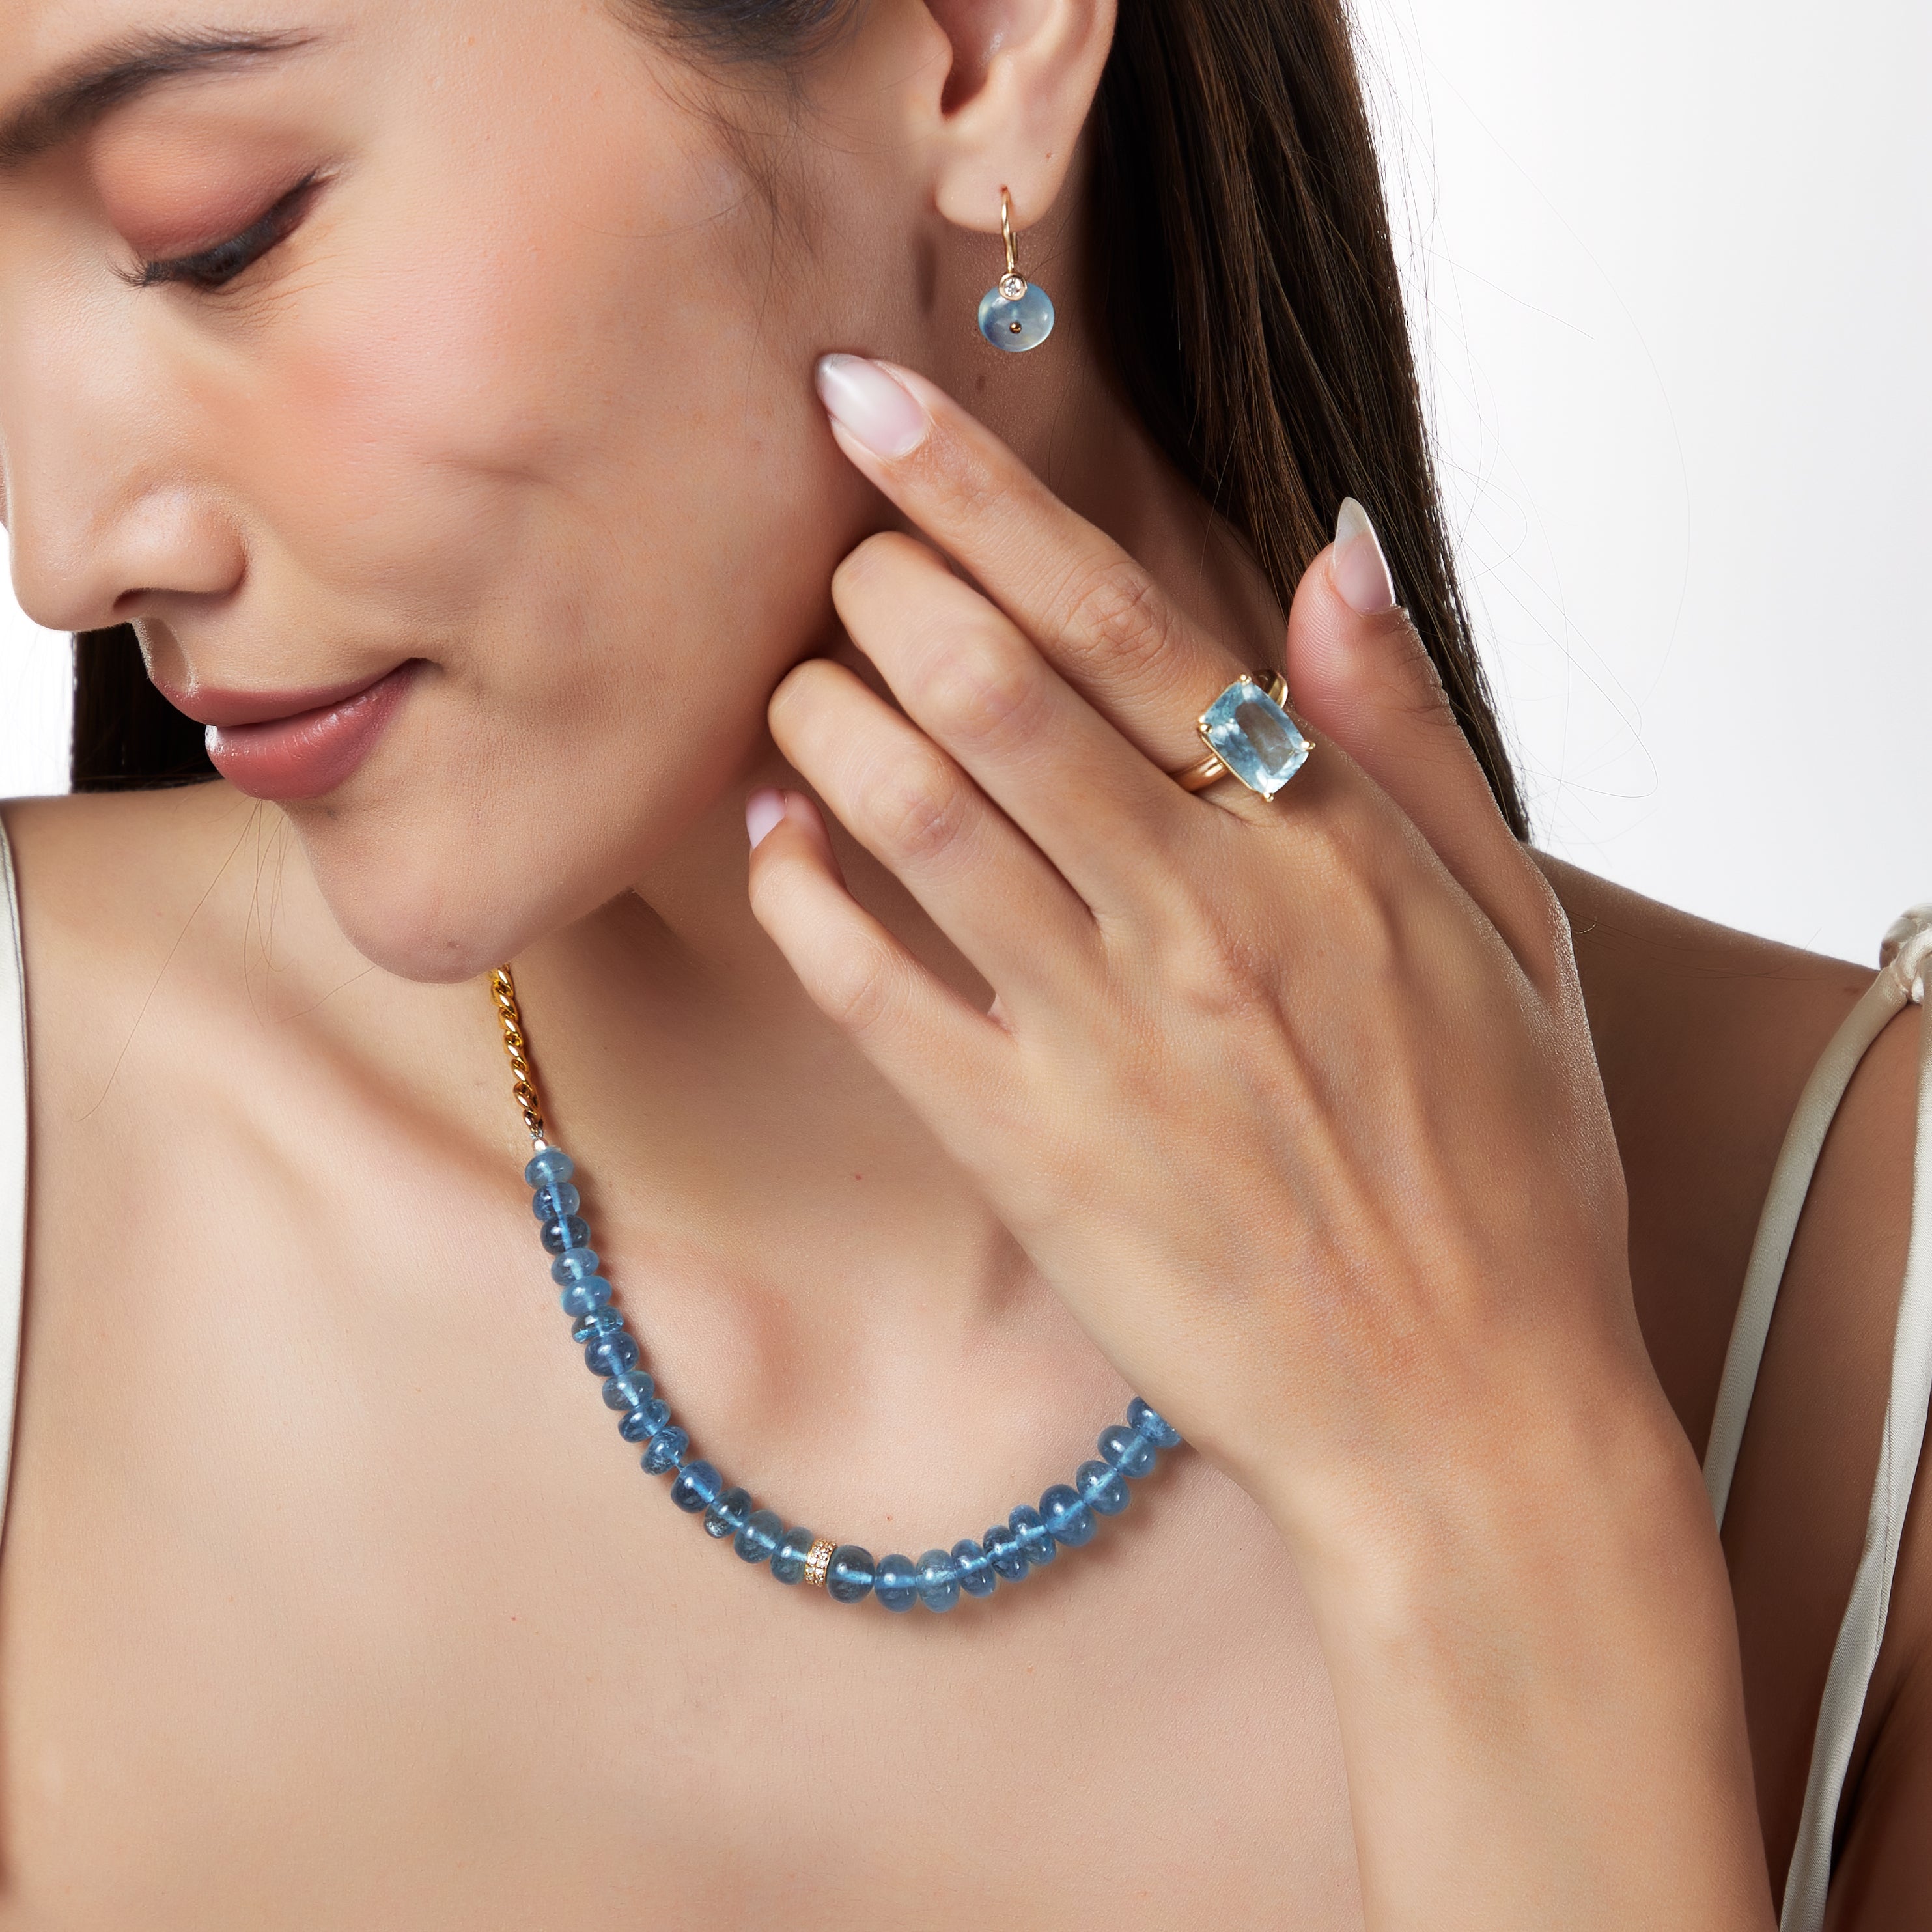 Maddi Aquamarine Diamond Roundel Necklace in 14k